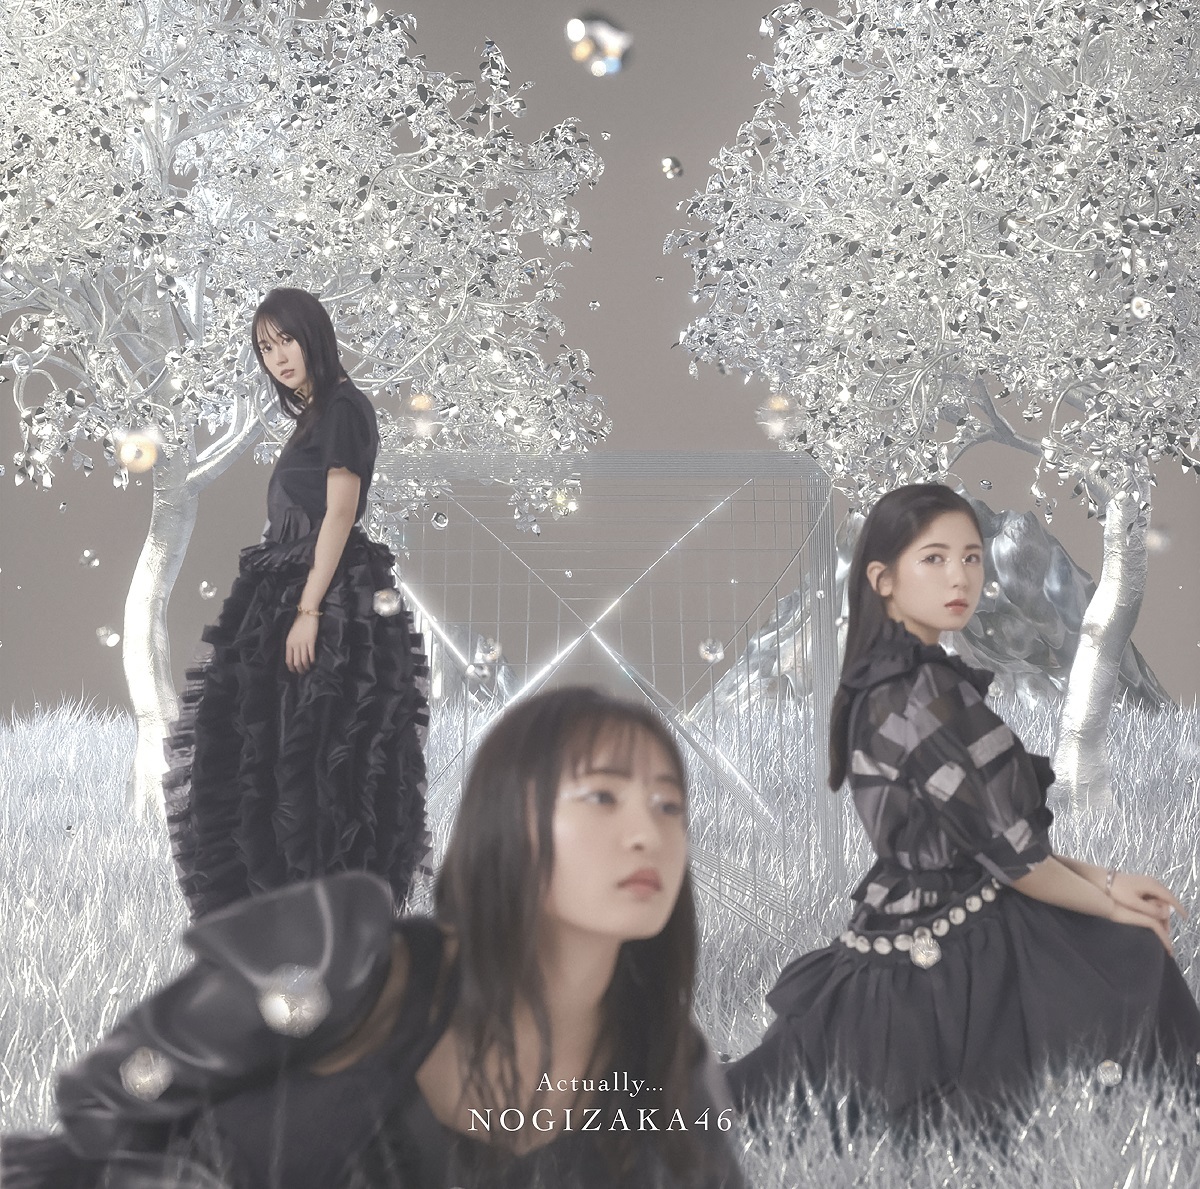 Nogizaka46 Actually... cover artwork